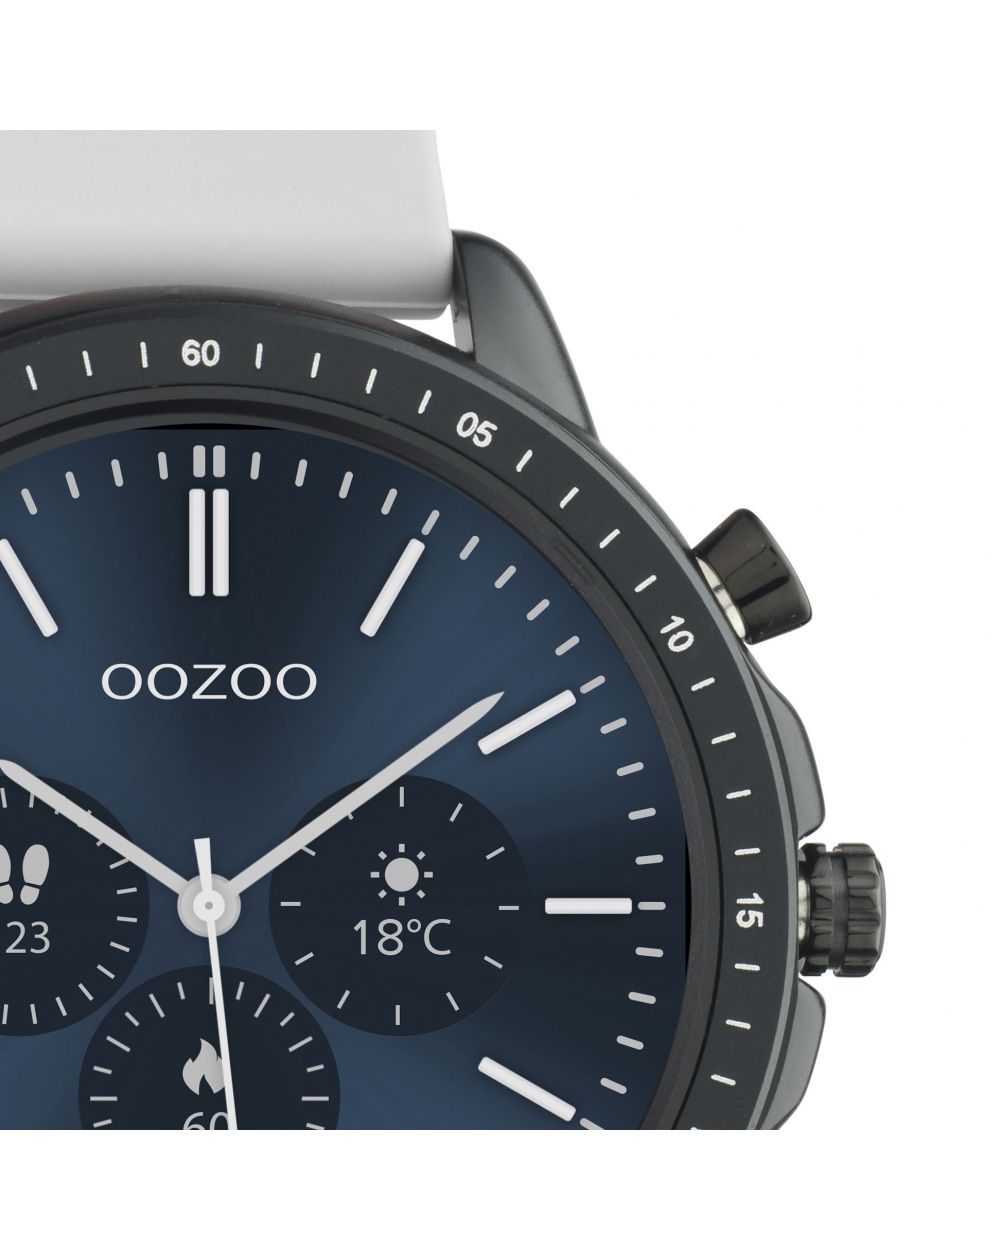 Montre Oozoo Q00328 - Smartwatch - Marque OOZOO - Livraison gratuite